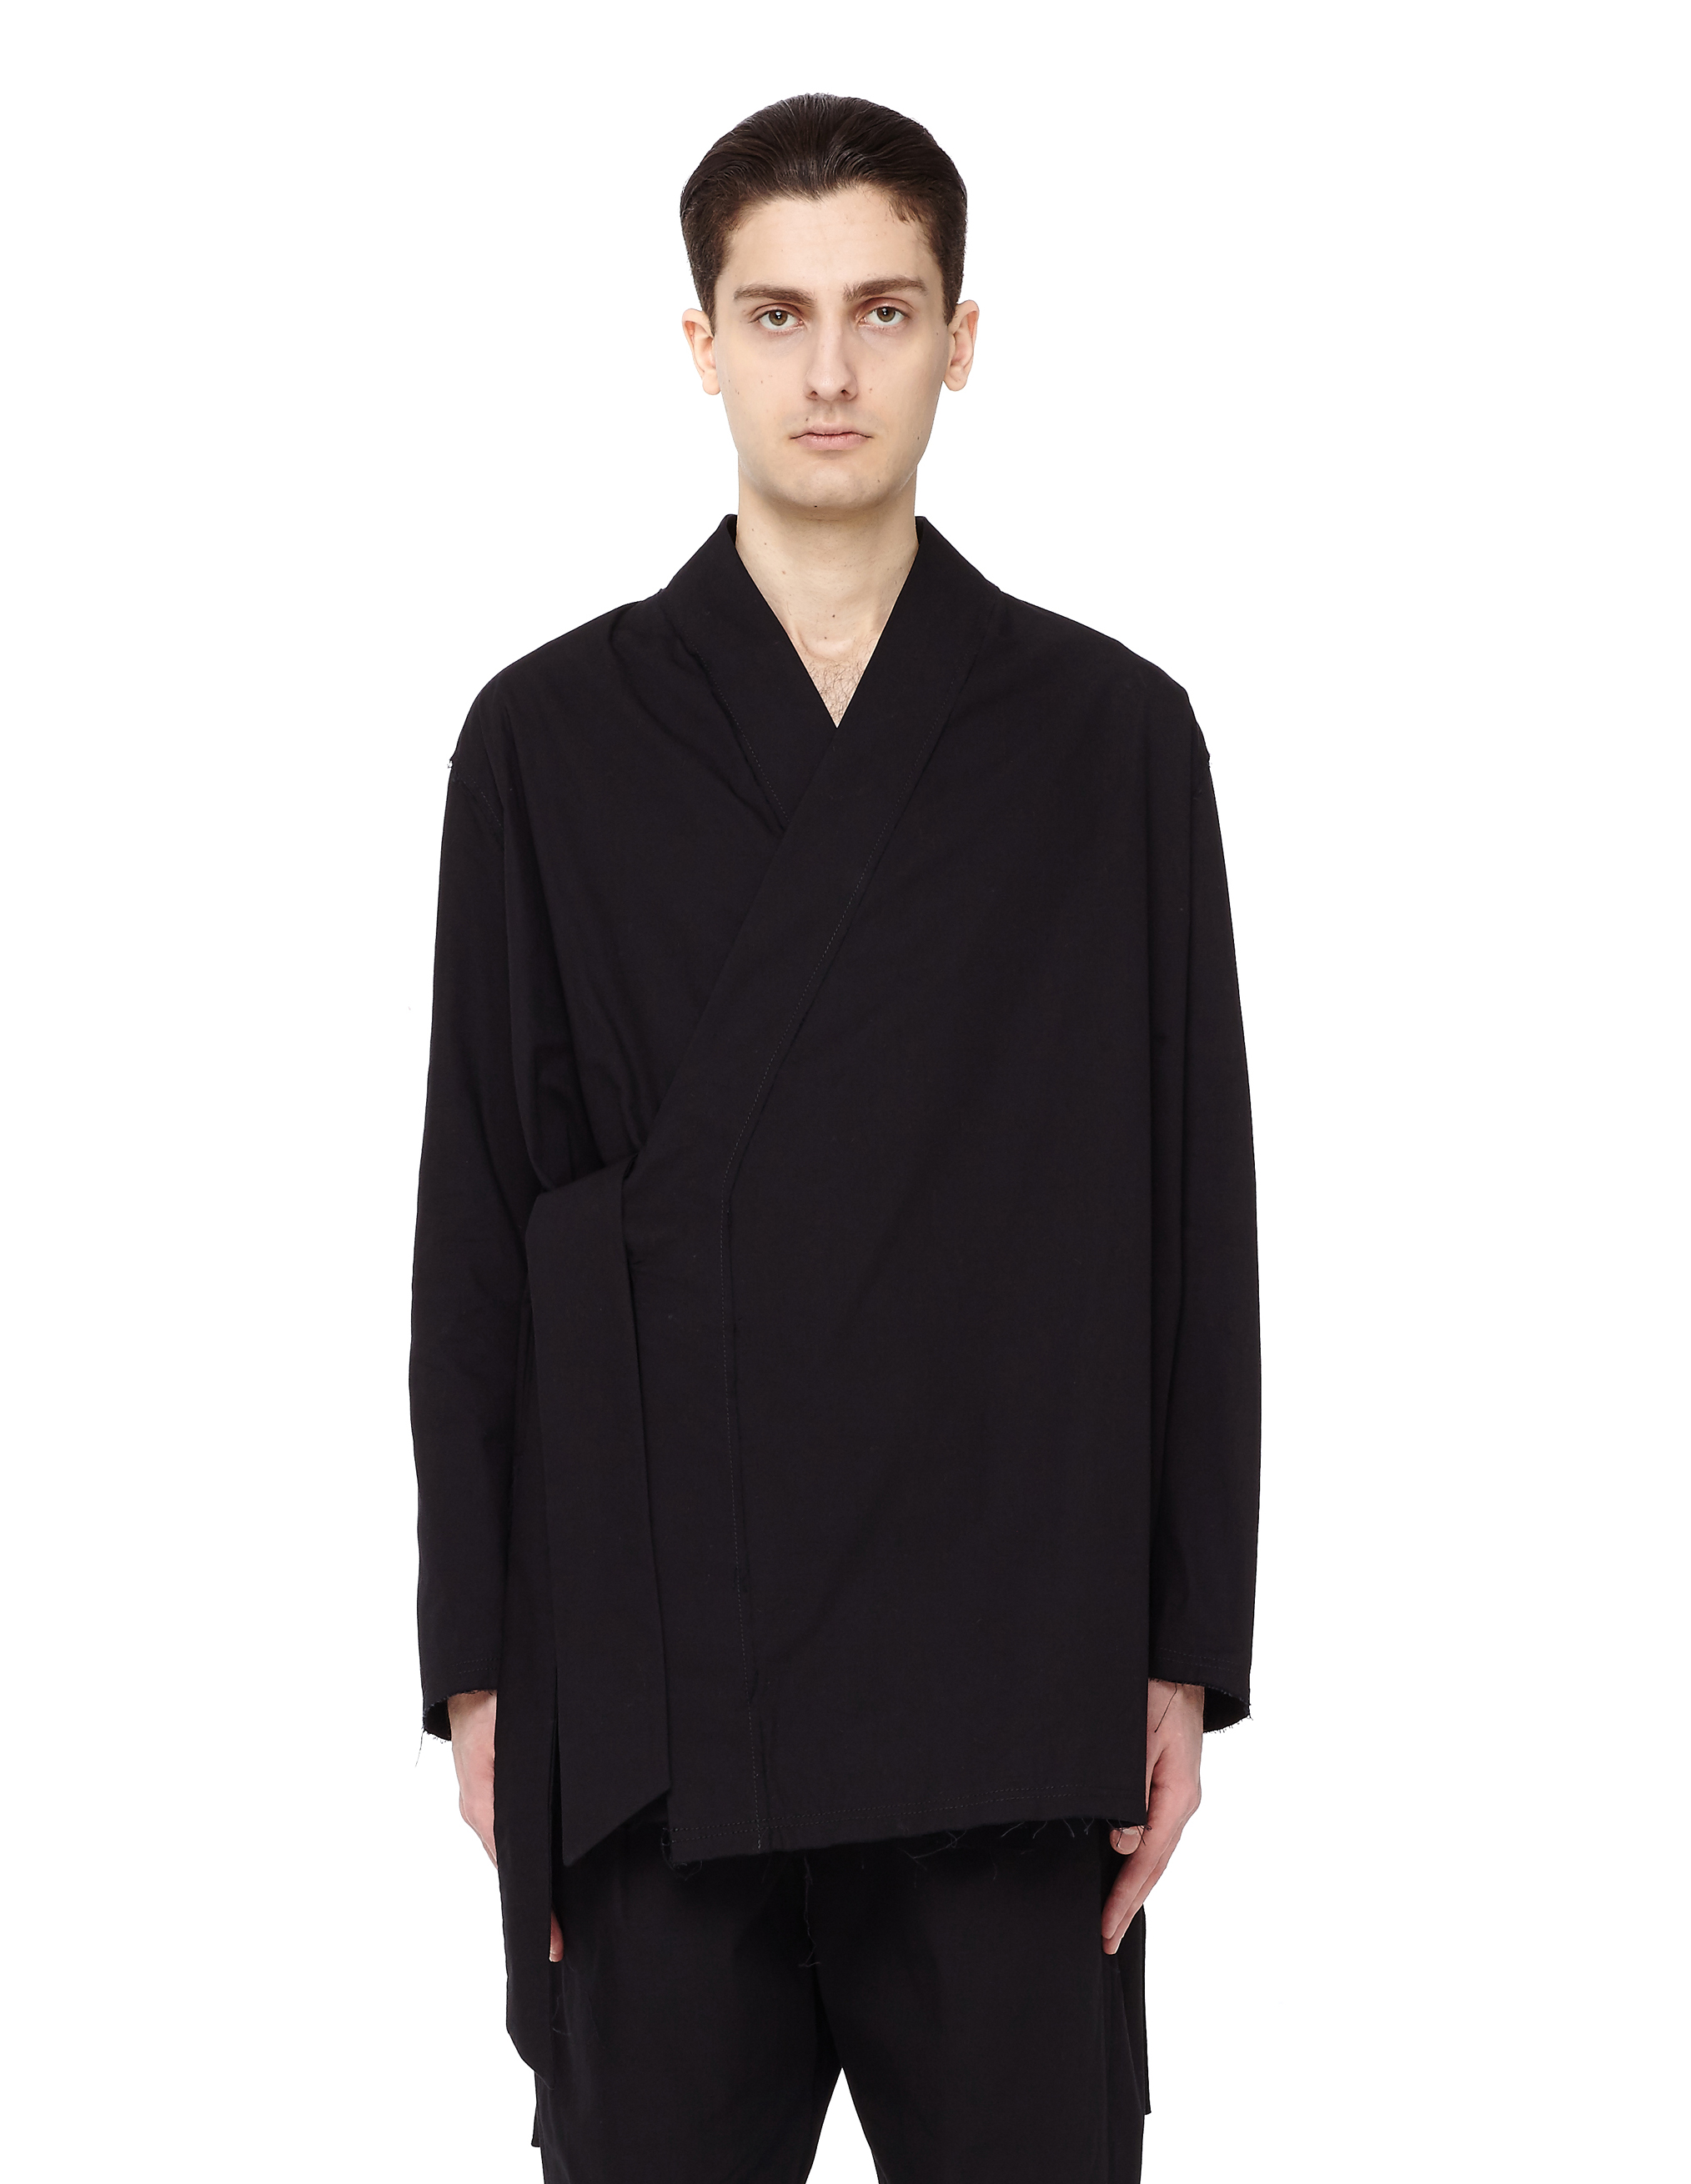 Buy Damir Doma men black cotton kimono jacket for $303 online on ...